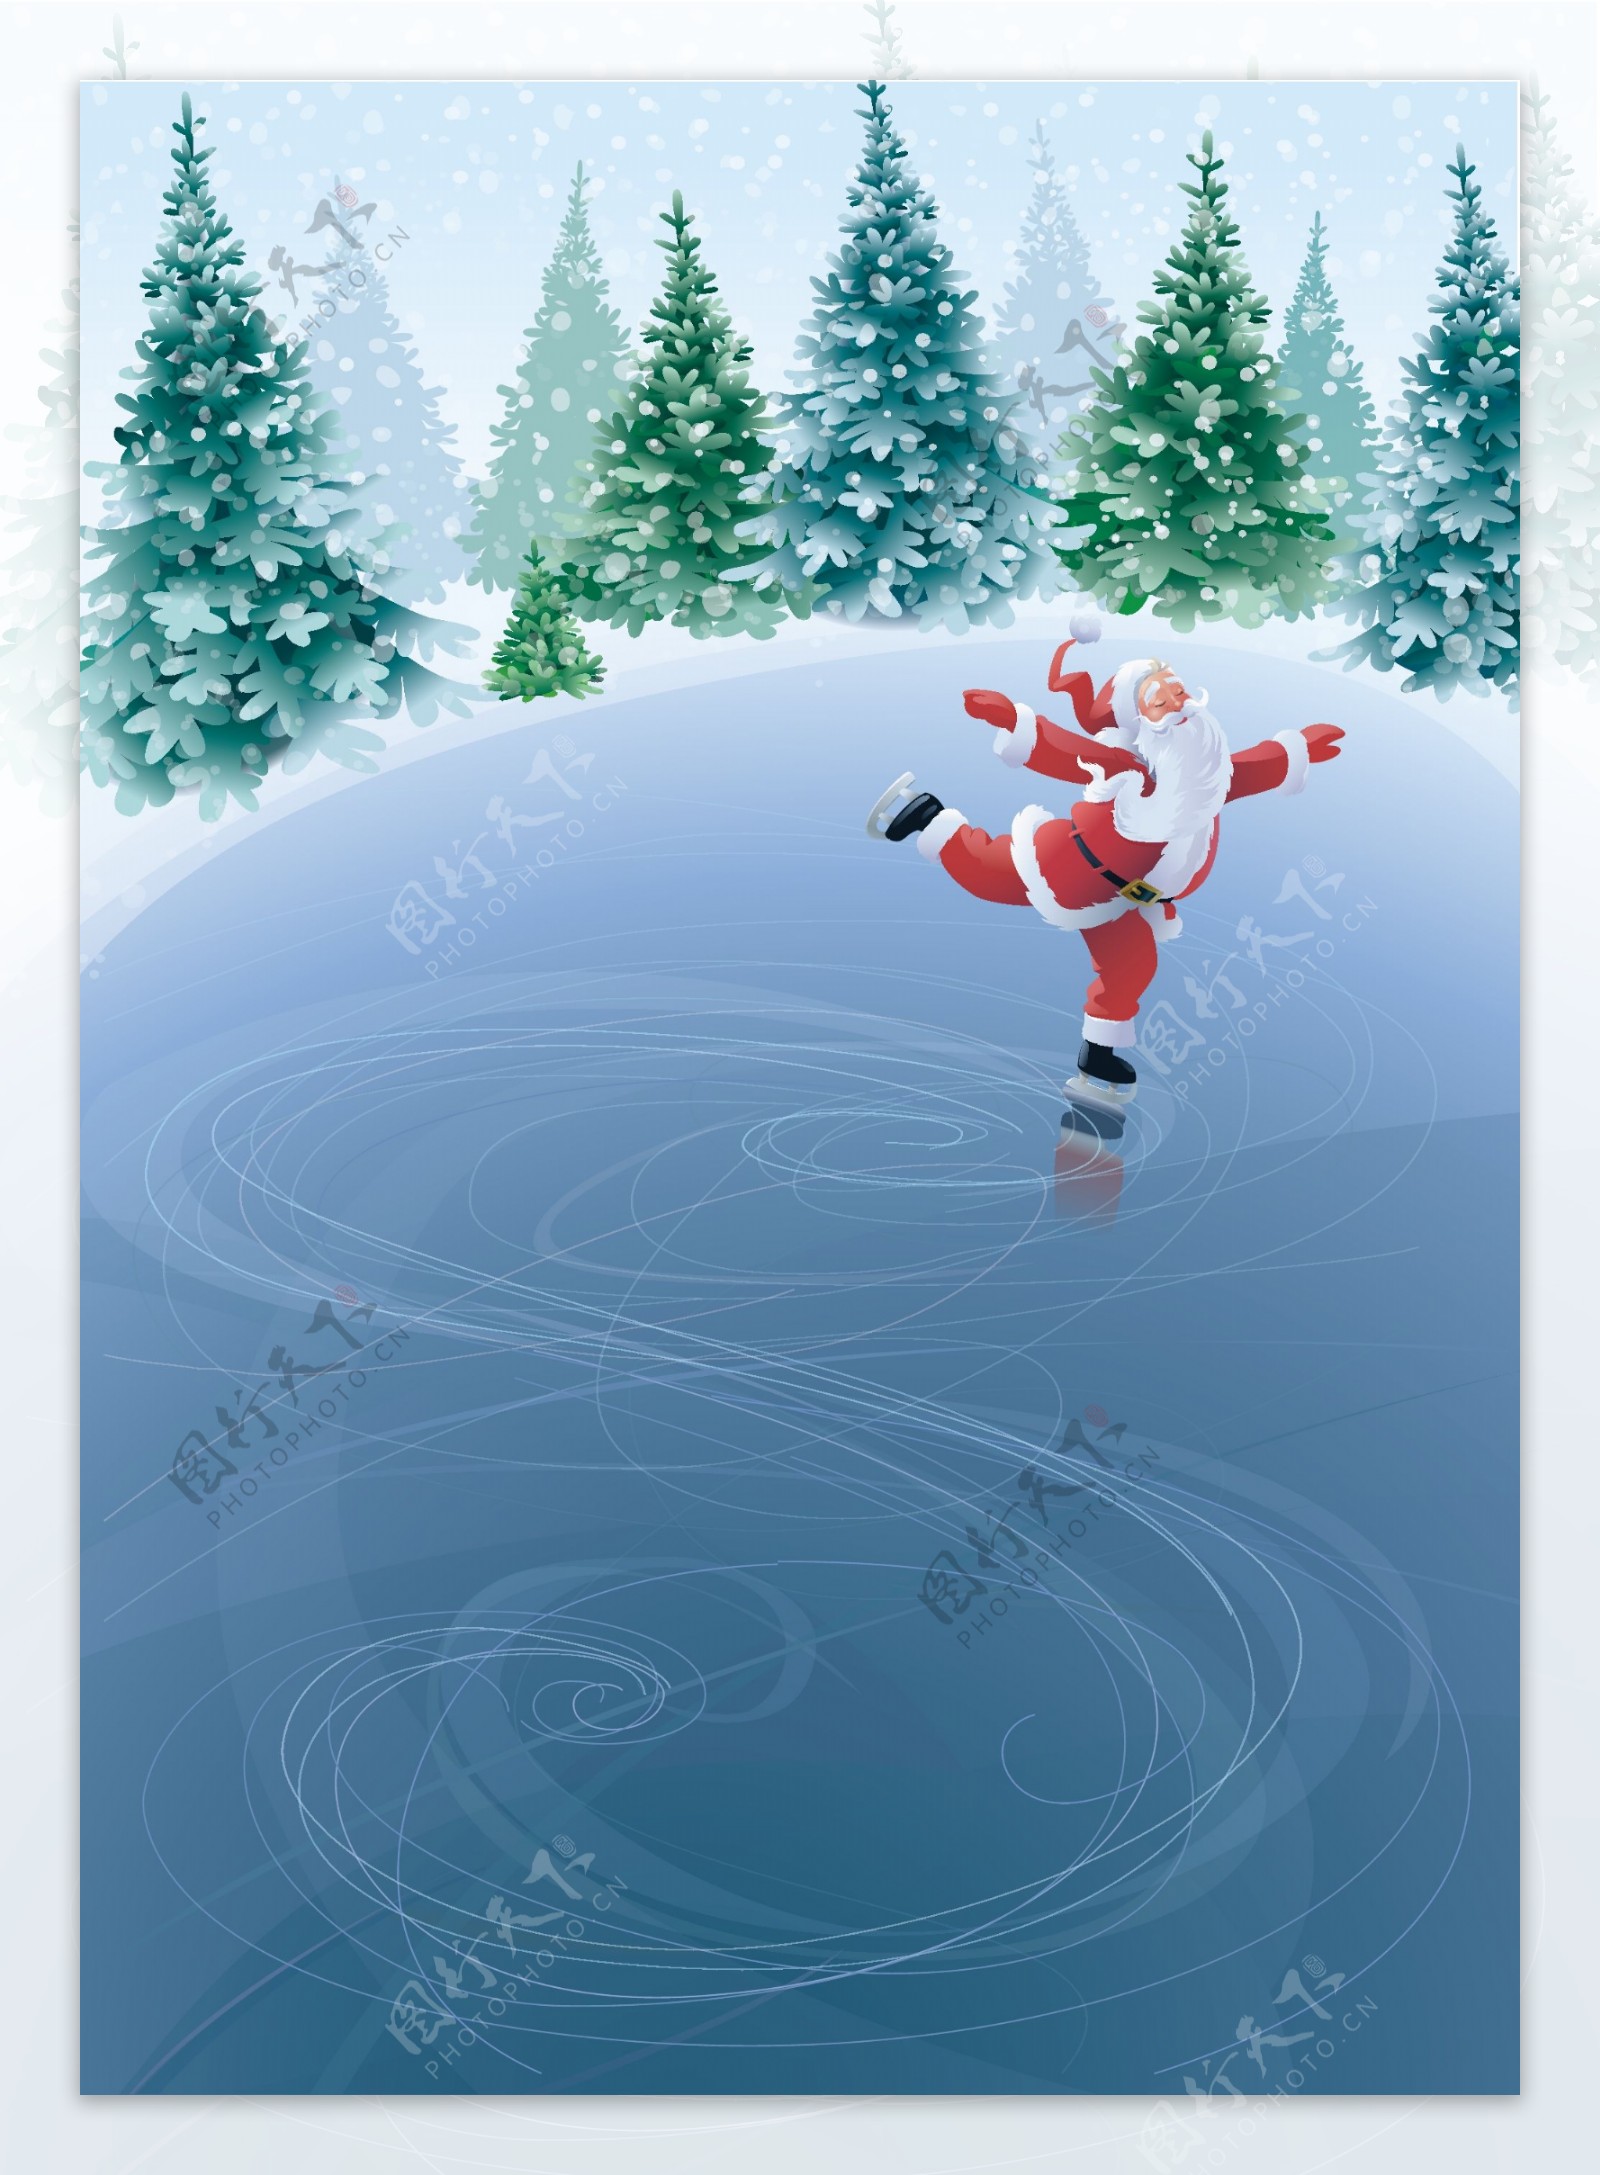 溜冰的圣诞老人圣诞背景图片